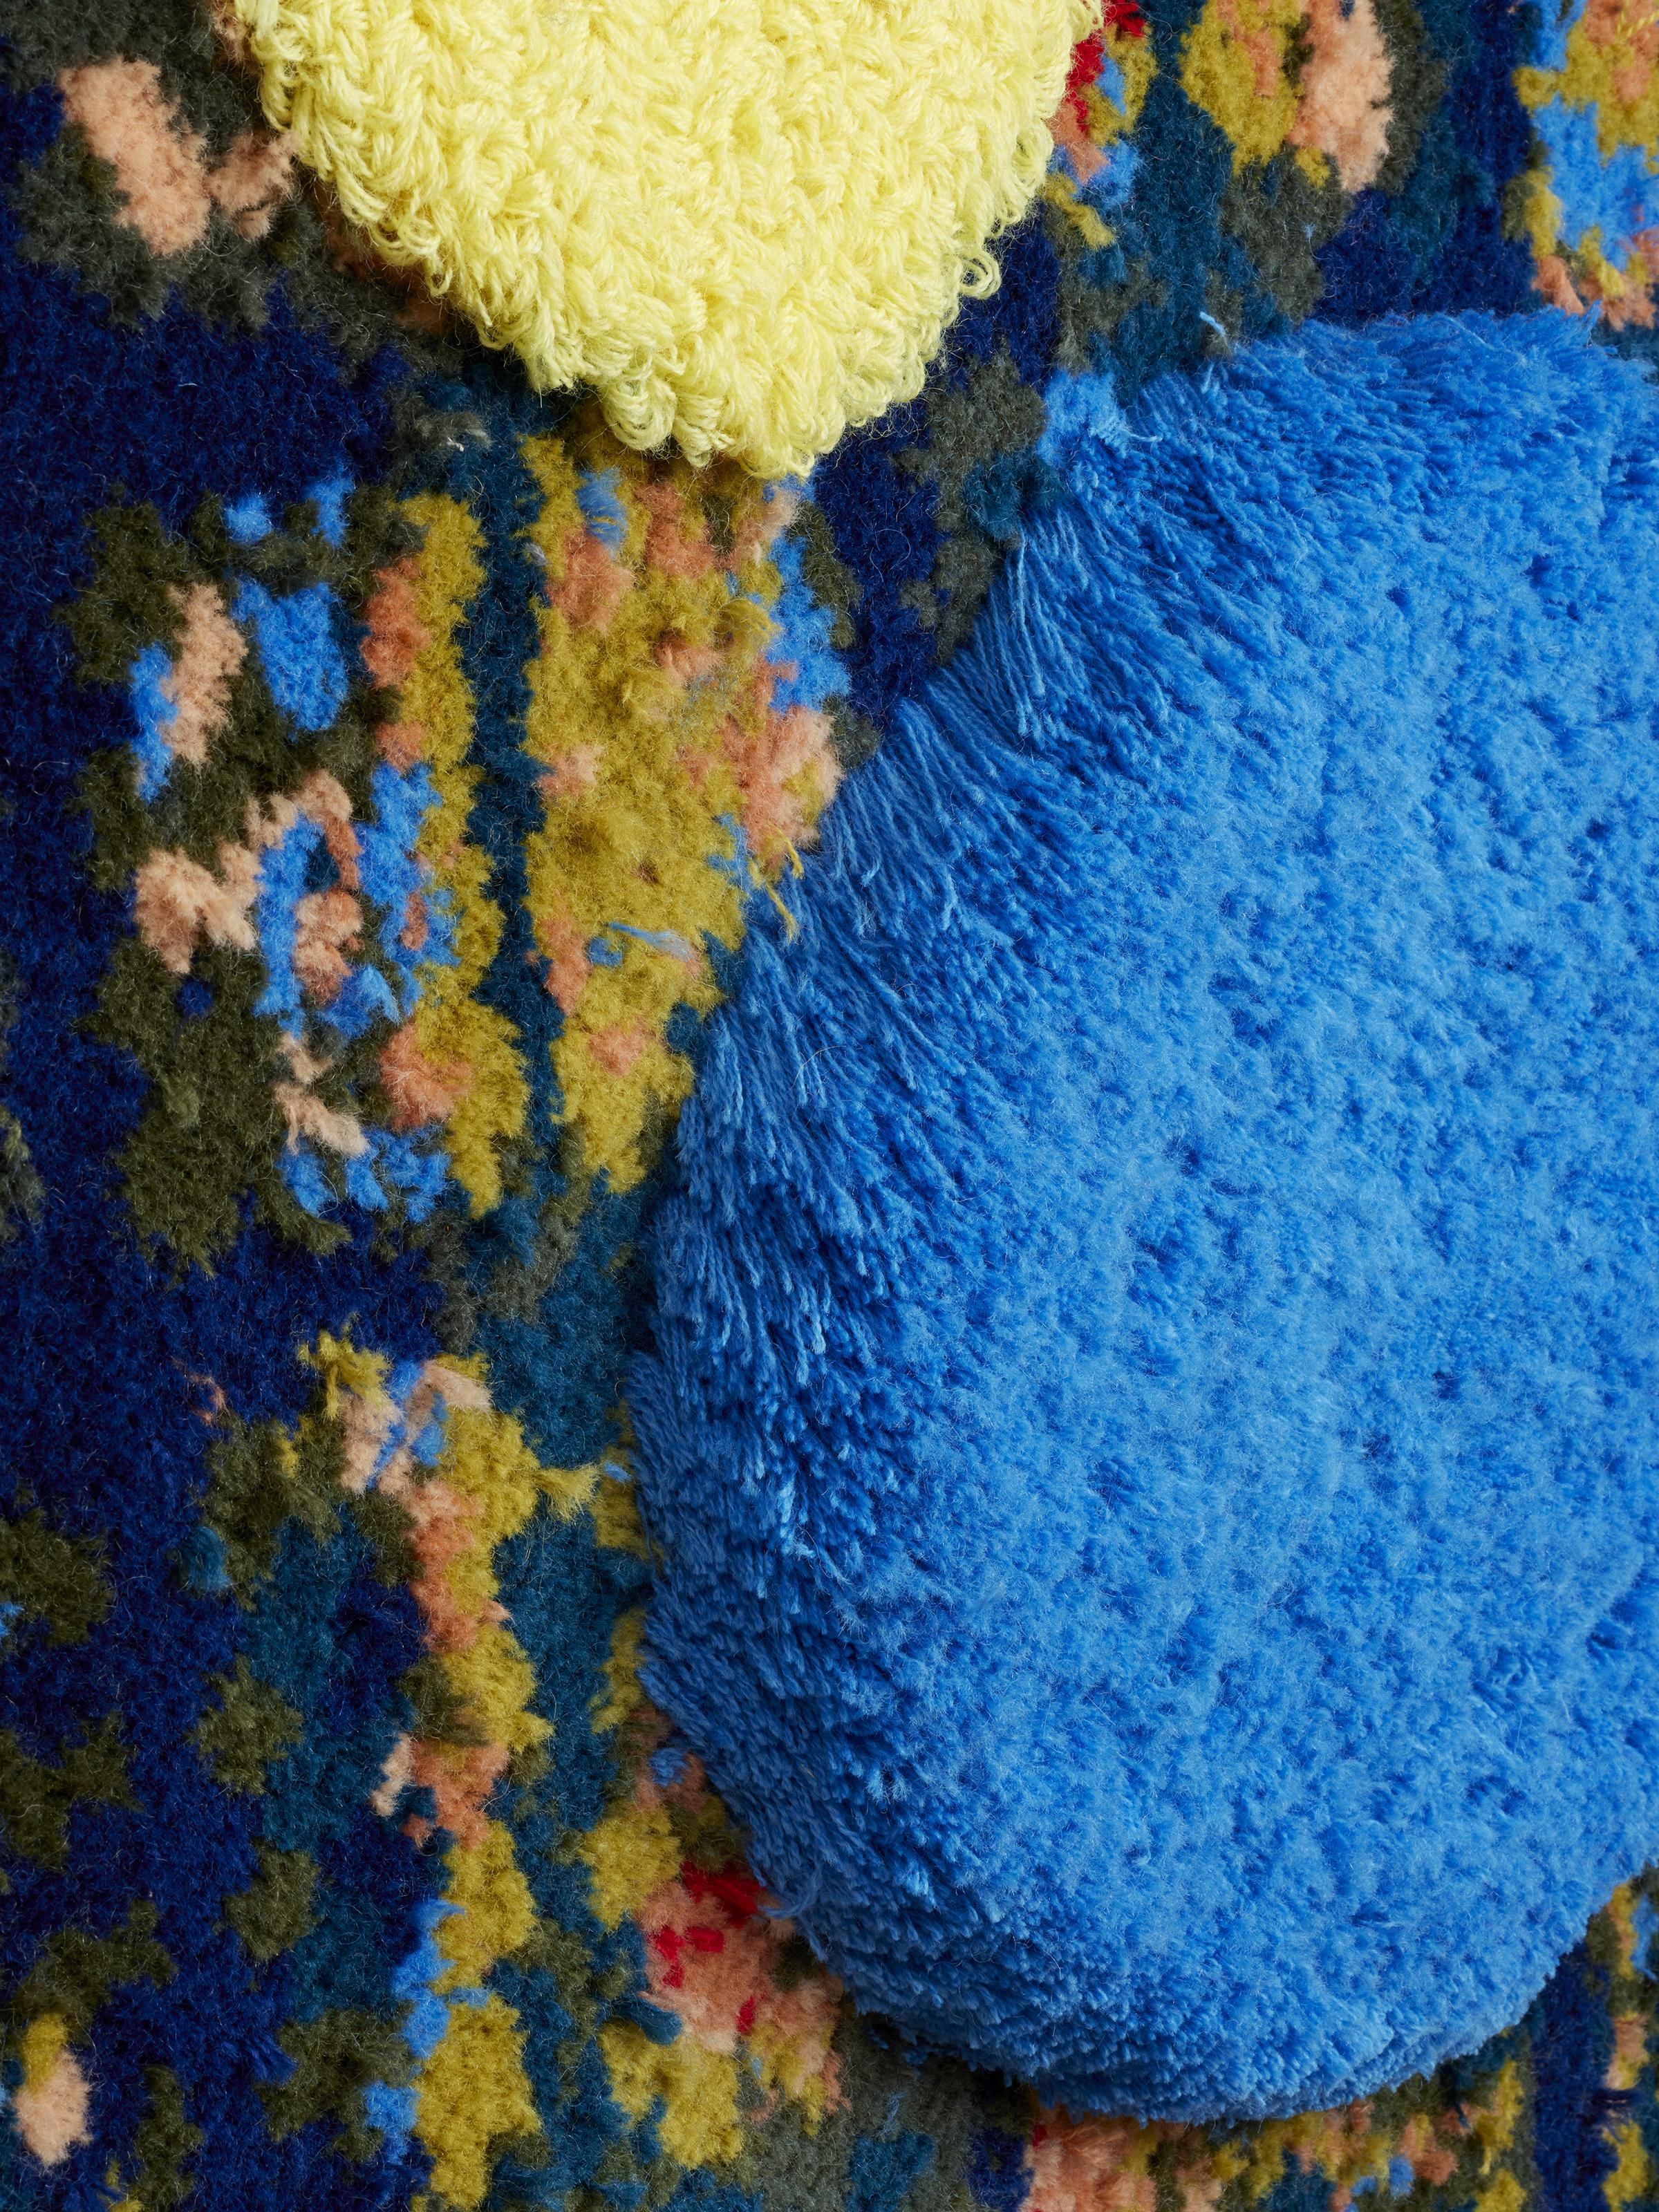 Cette œuvre touffetée abstraite présente des teintes de jaune, de bleu, de rouge et de vert.

Trish Andersen s'inspire des œuvres de Shelia Hicks, Cy Twombly, Judith Scott et Nick Cave.

Looking Out, Looking In